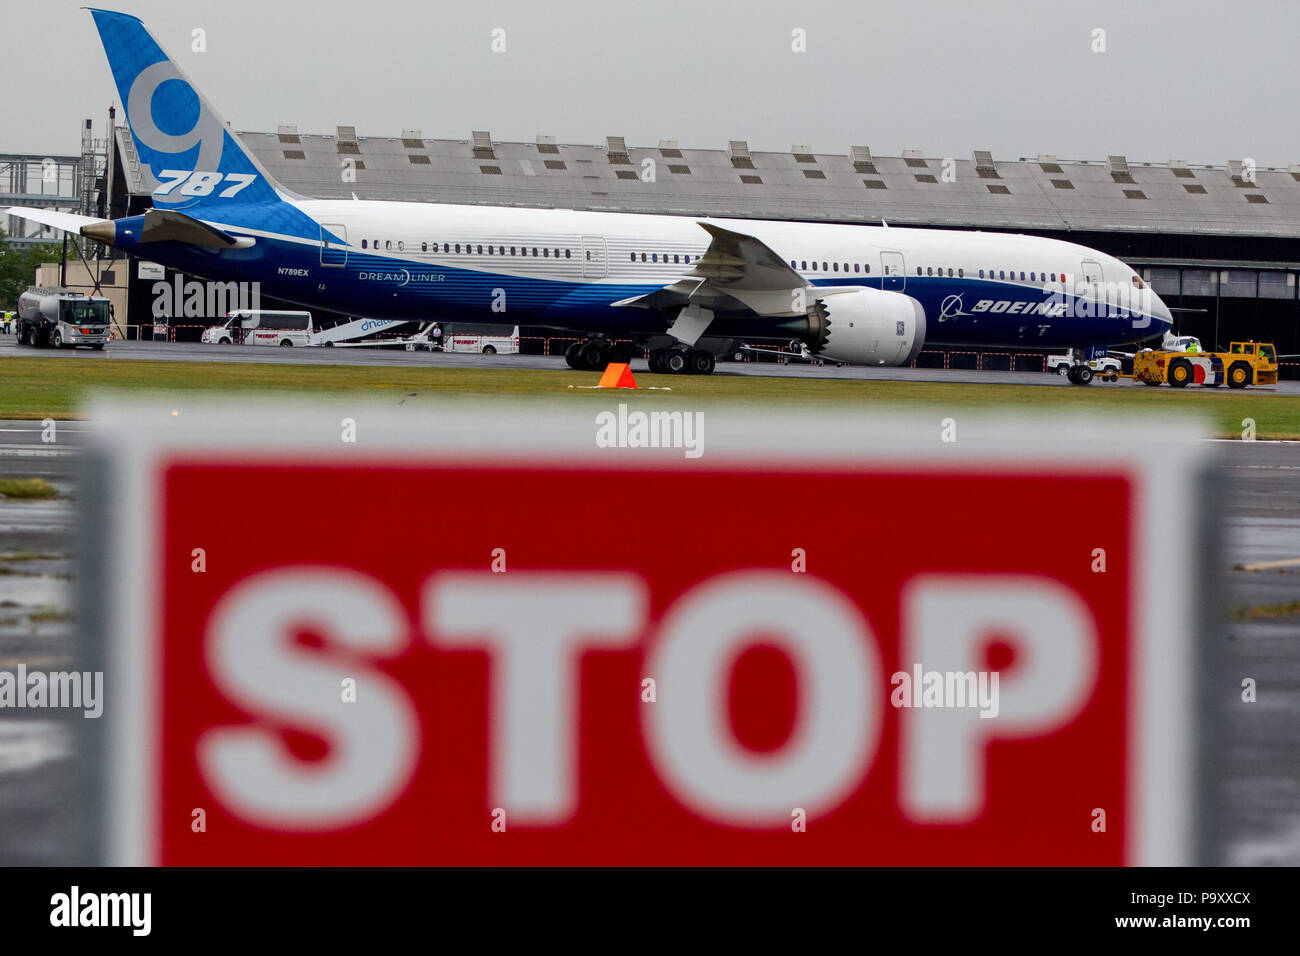 Le Boeing 787-9 'Dnavette Atlantis prépare son dernier retour sur terre sur la photo derrière le panneau 'STOP' au Farnborough International Airshow, UK Banque D'Images